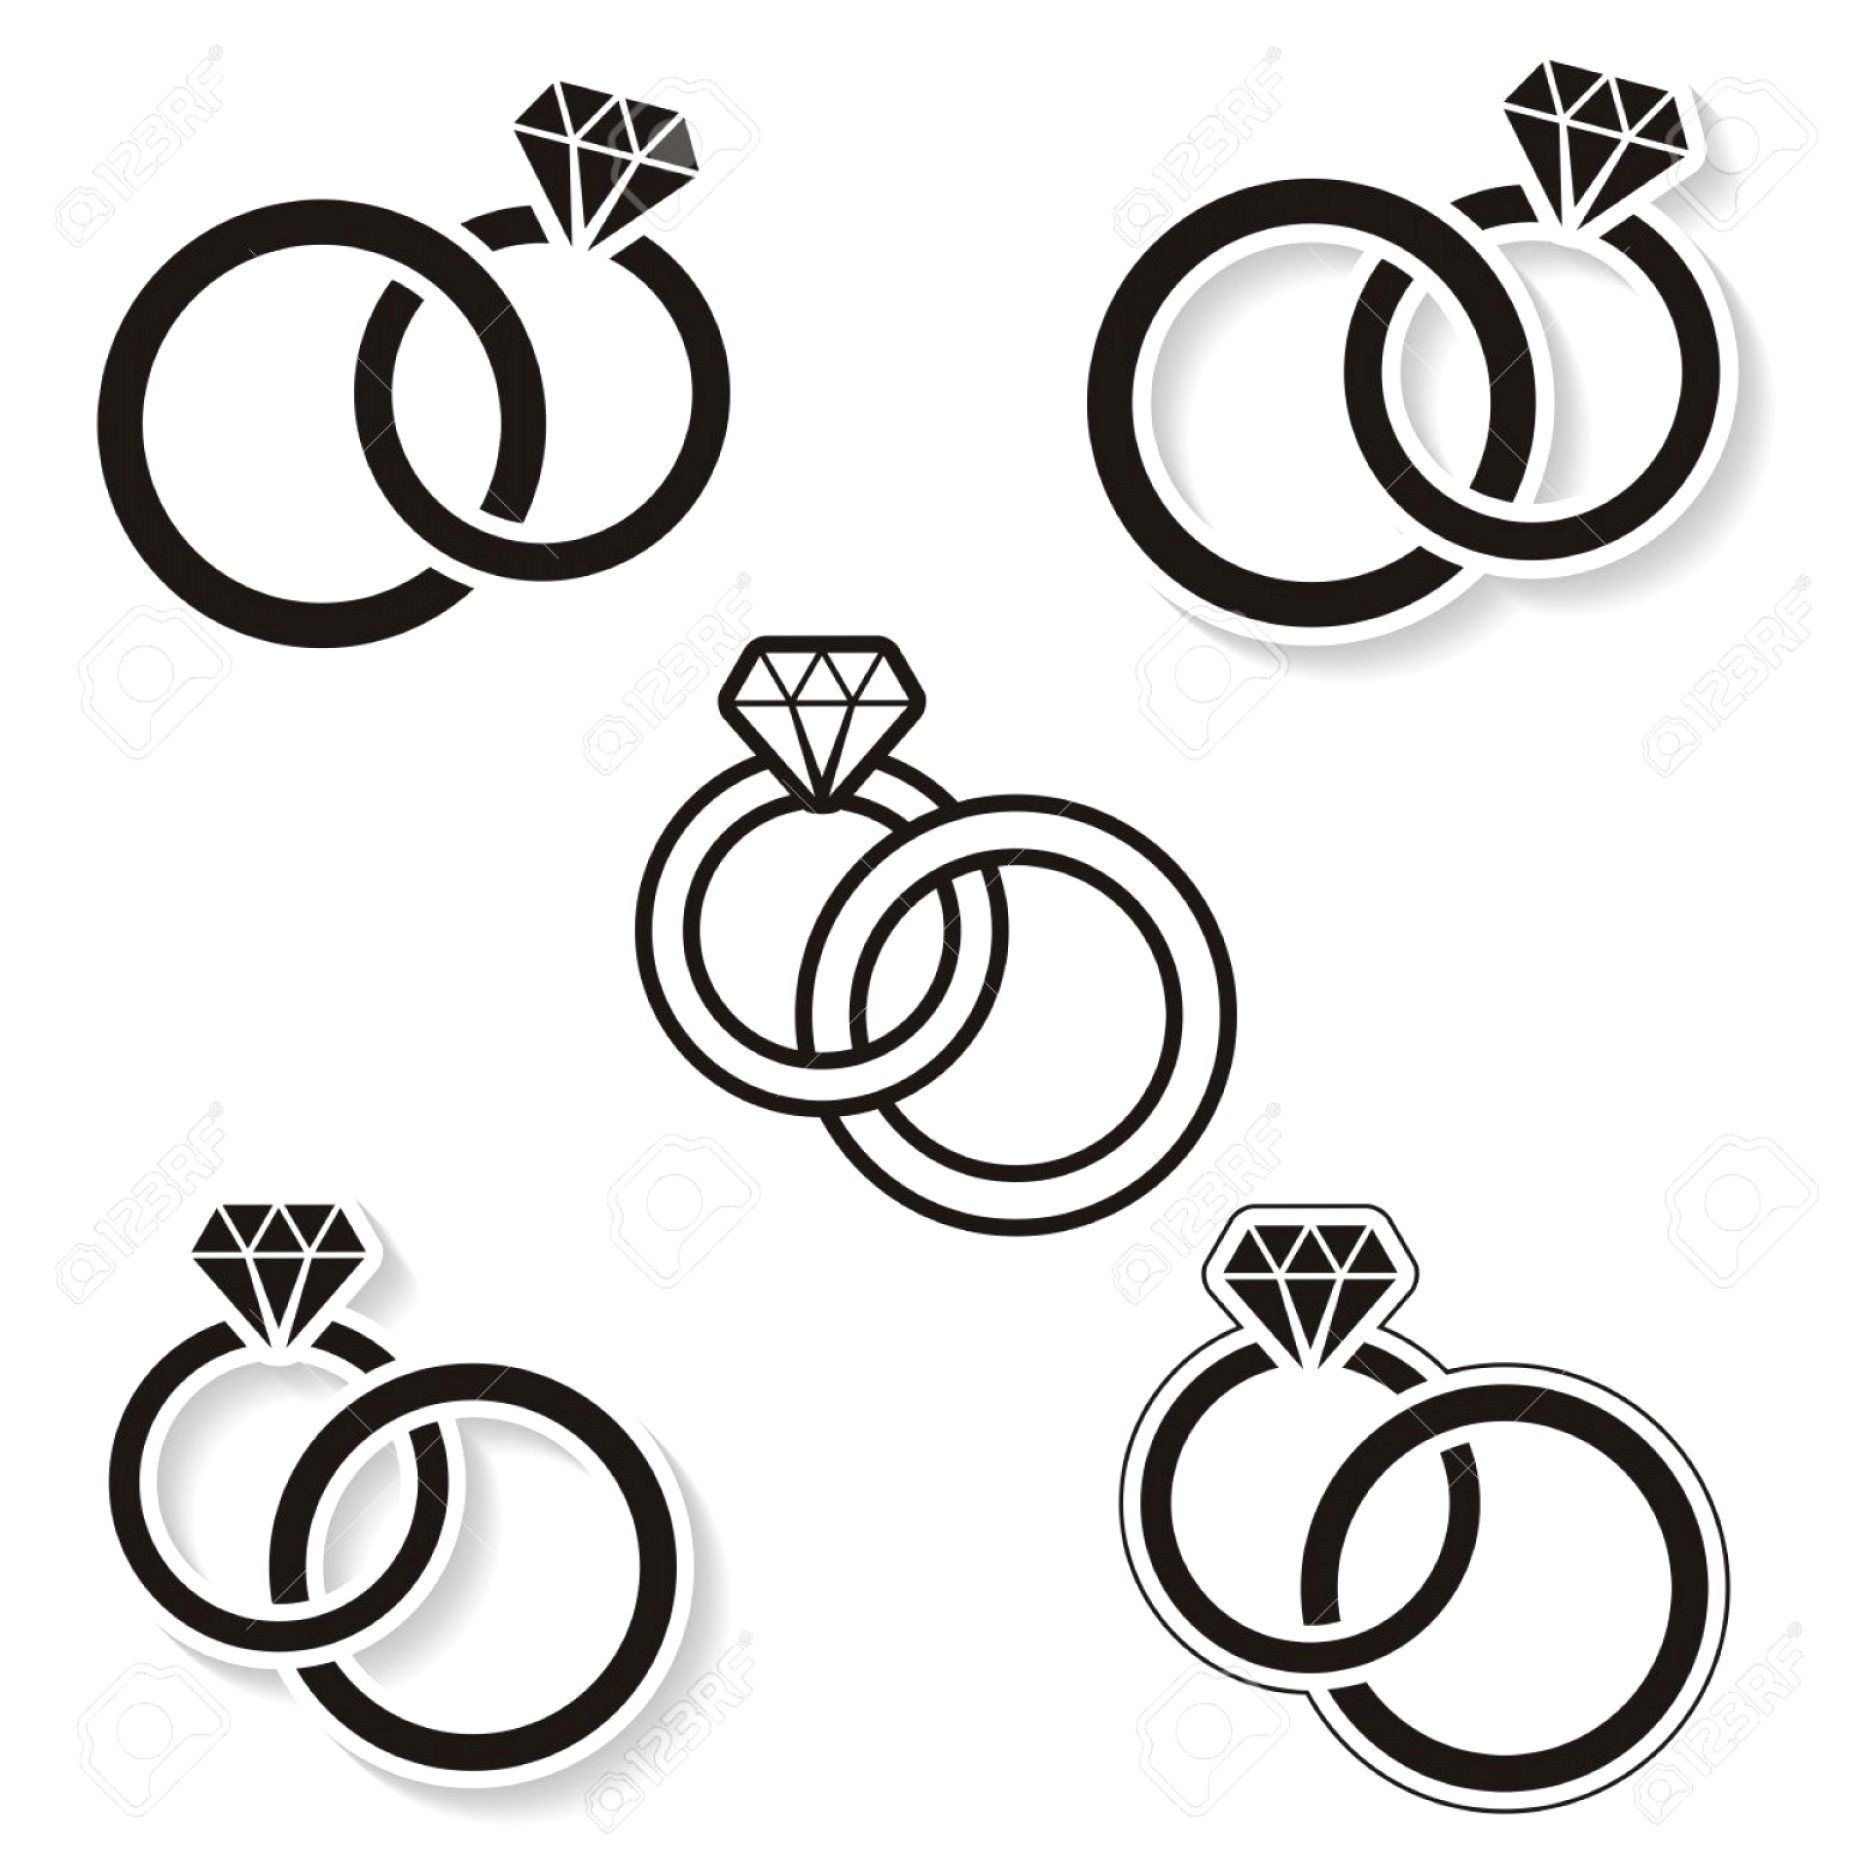 Обручальные кольца схематично